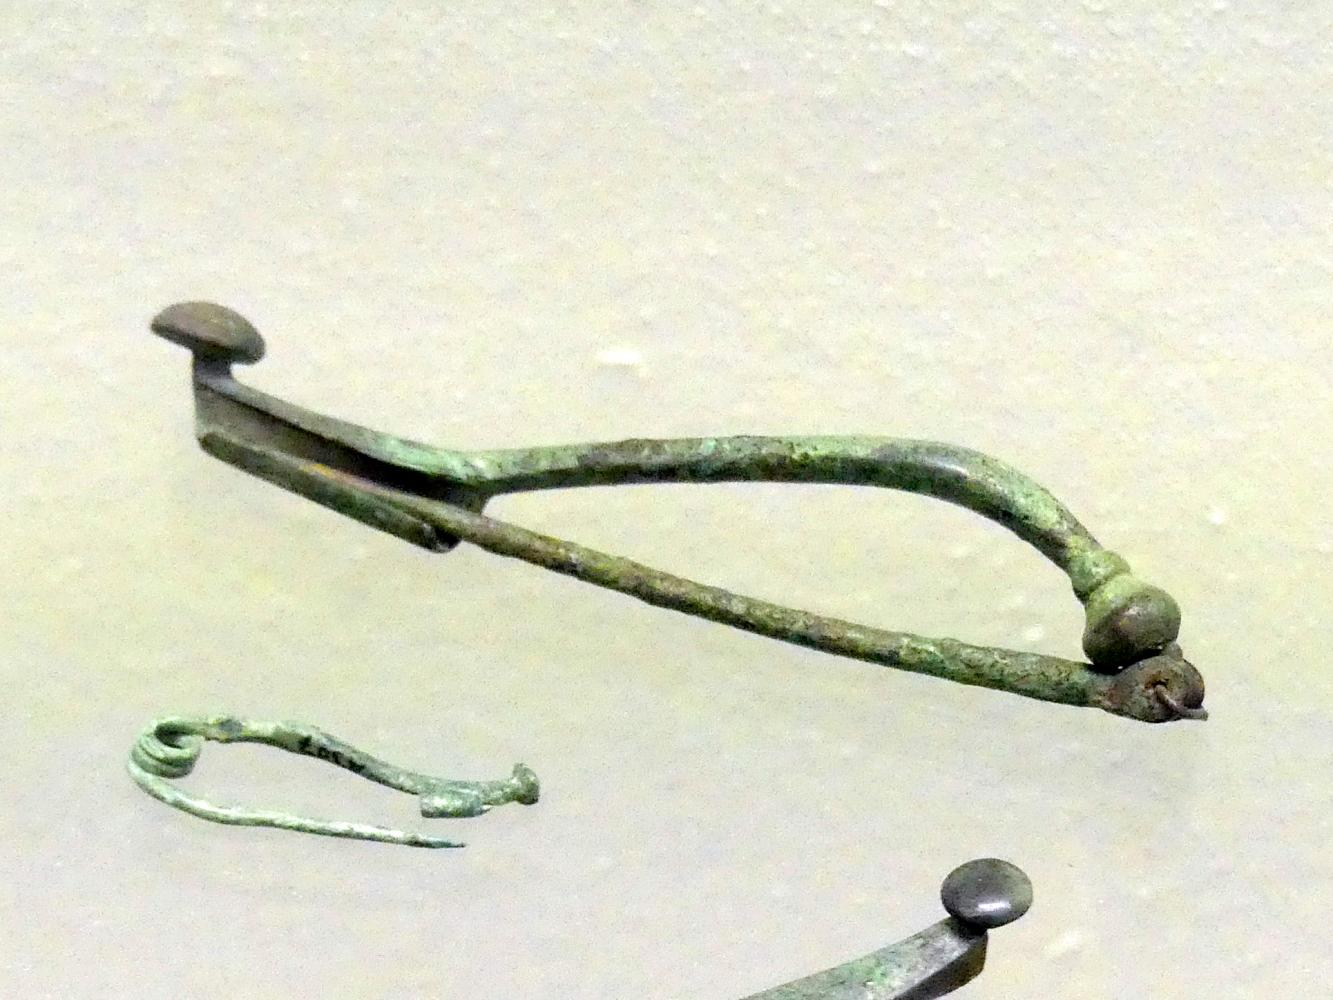 Gewandspange mit Fußknopf, Frühlatènezeit A, 700 - 100 v. Chr.